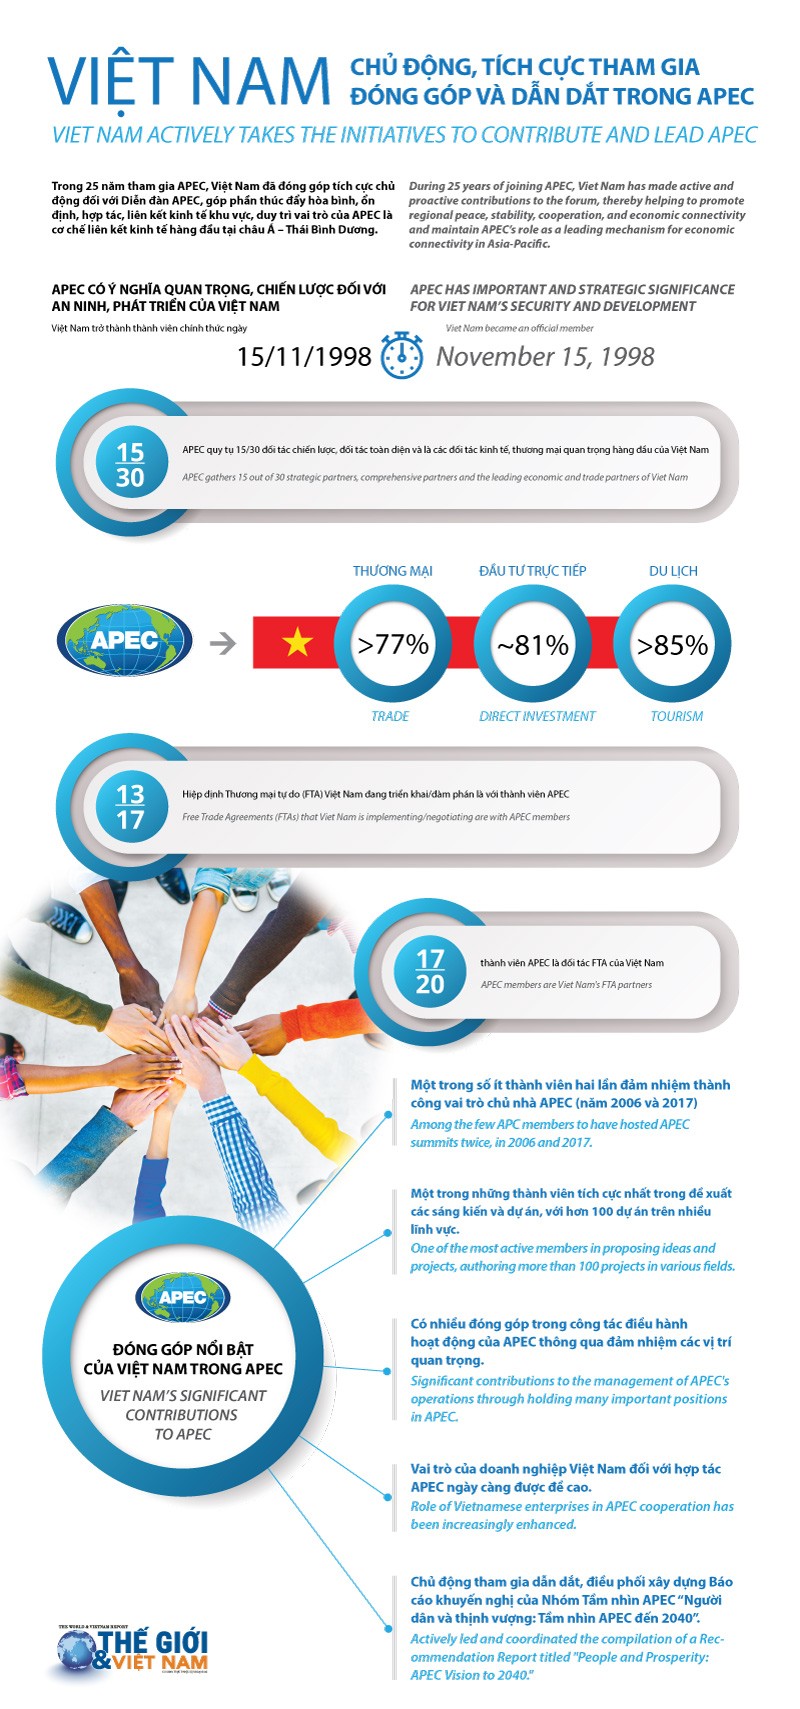 Việt Nam chủ động, tích cực tham gia đóng góp và dẫn dắt trong APEC